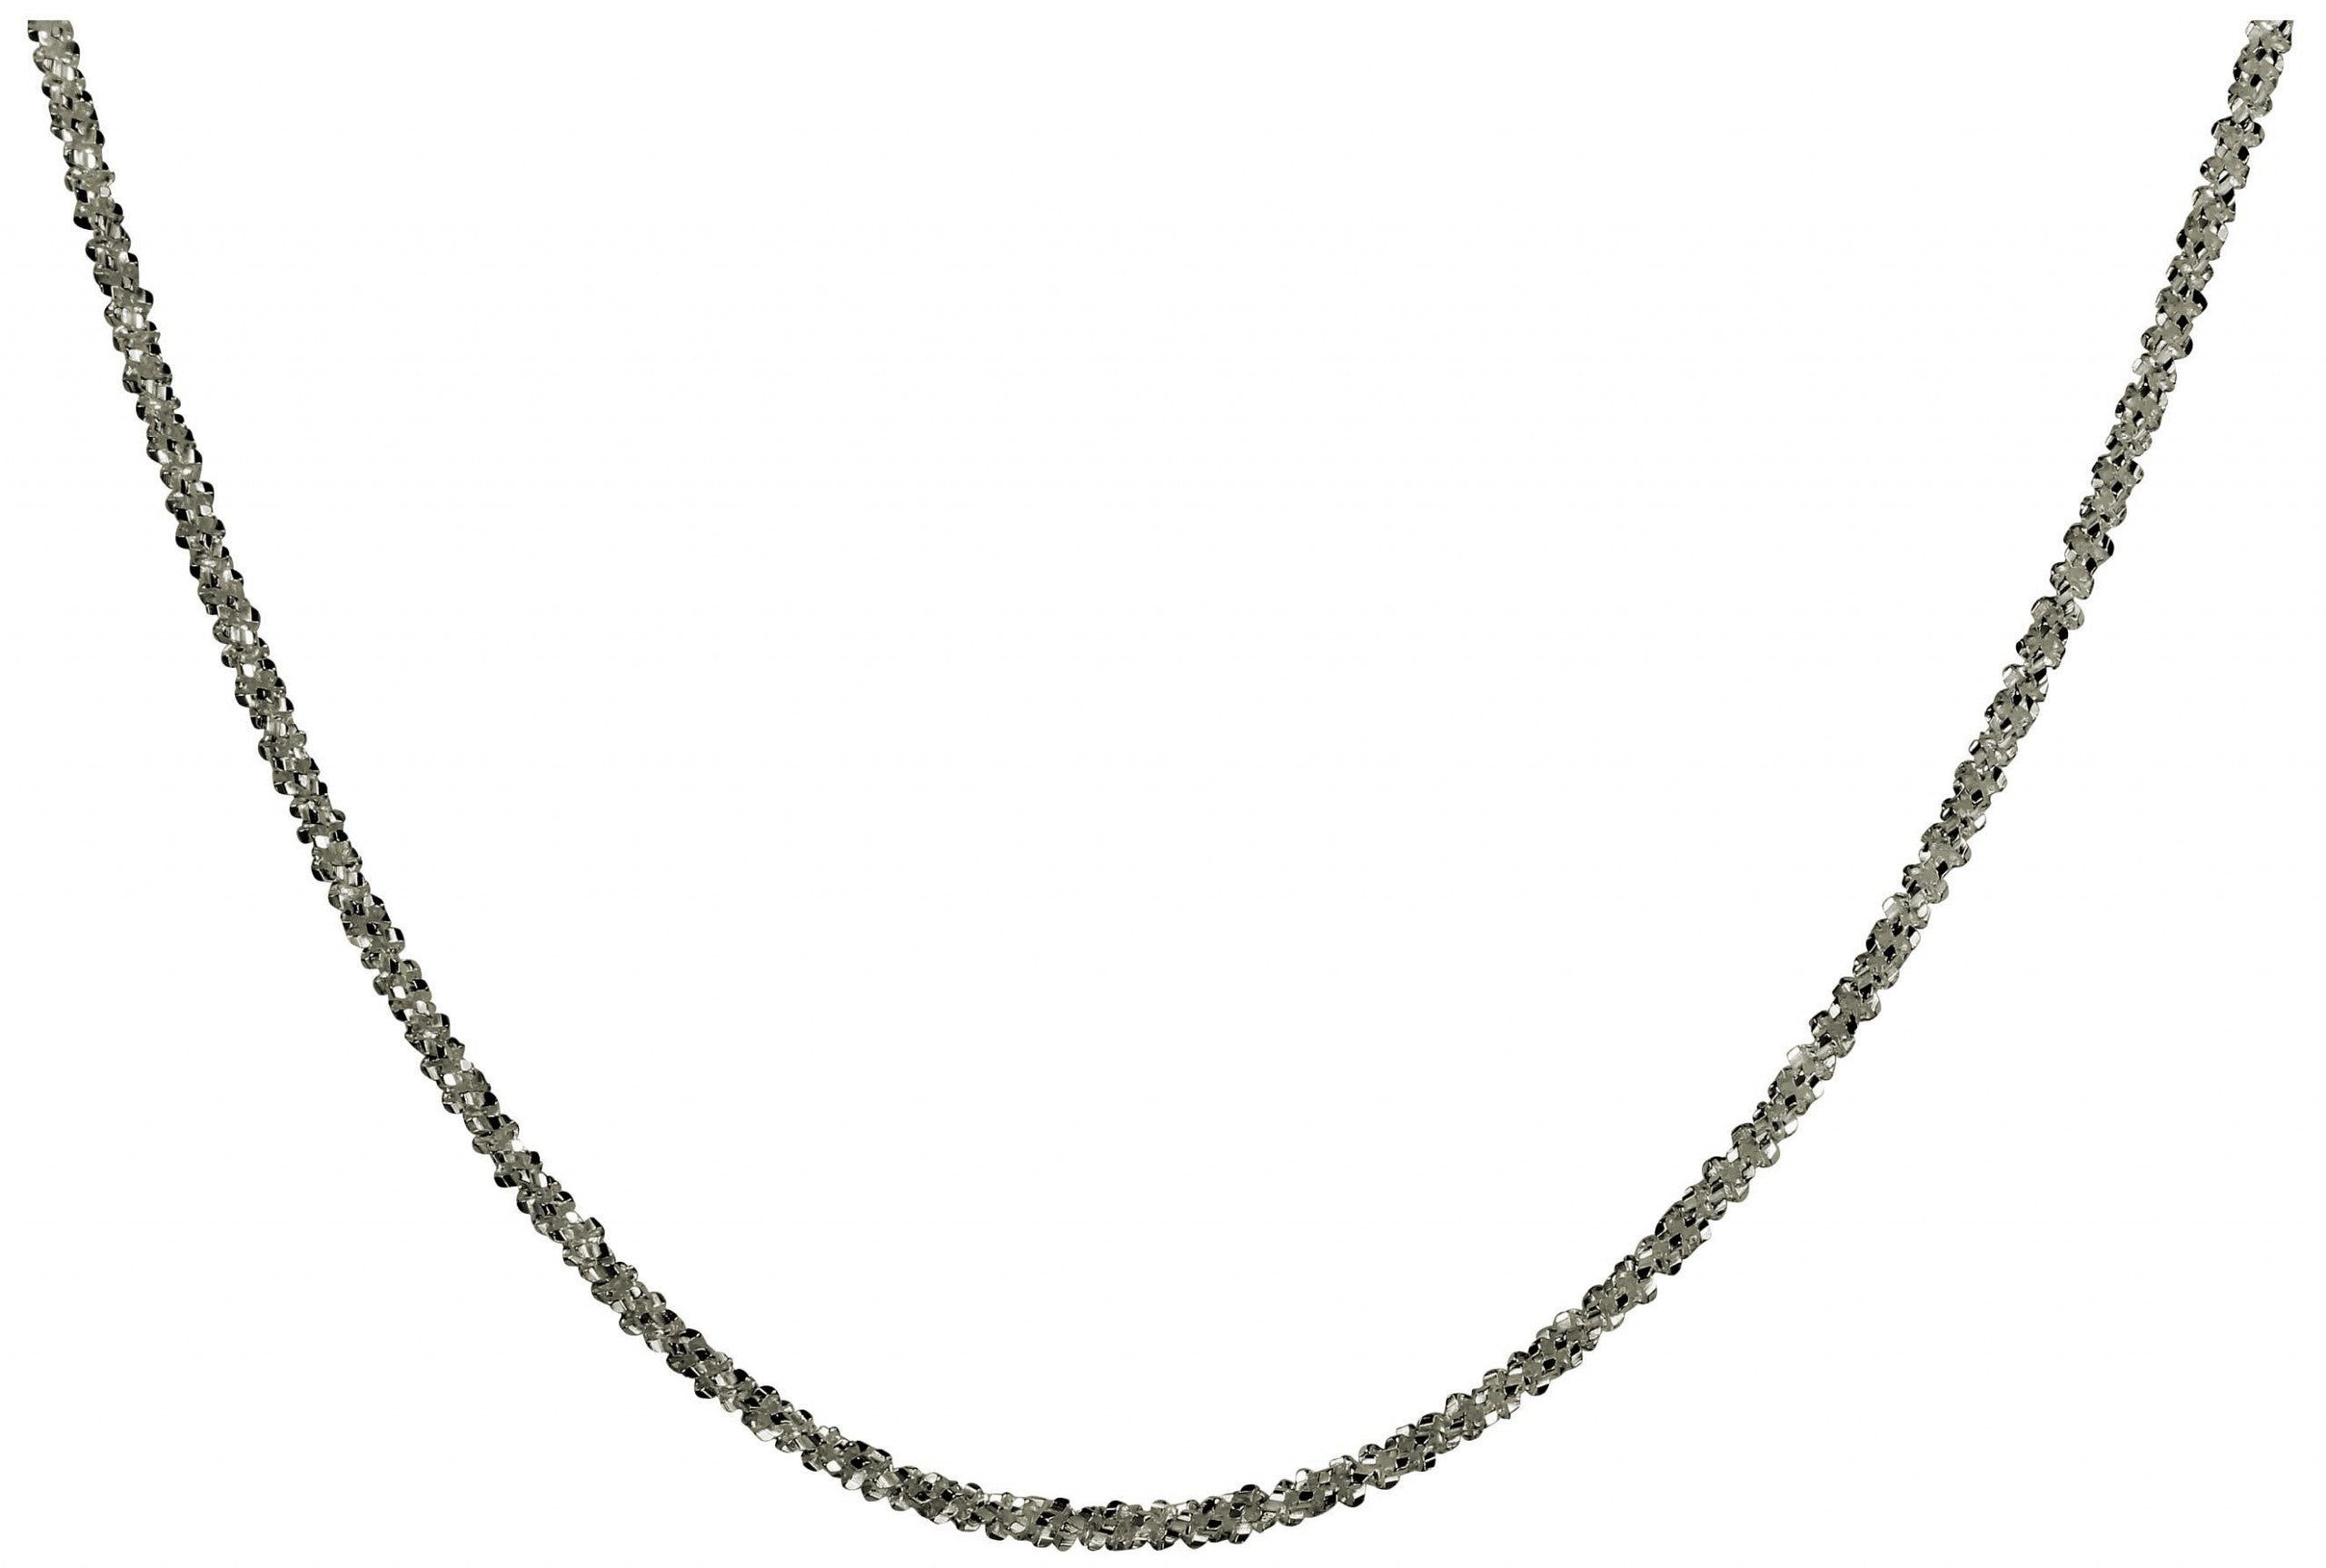 Criss-Cross-Kette aus Silber für Damen mit einem geschmeidigen Geflecht und einer glänzend funkelnden Oberfläche.